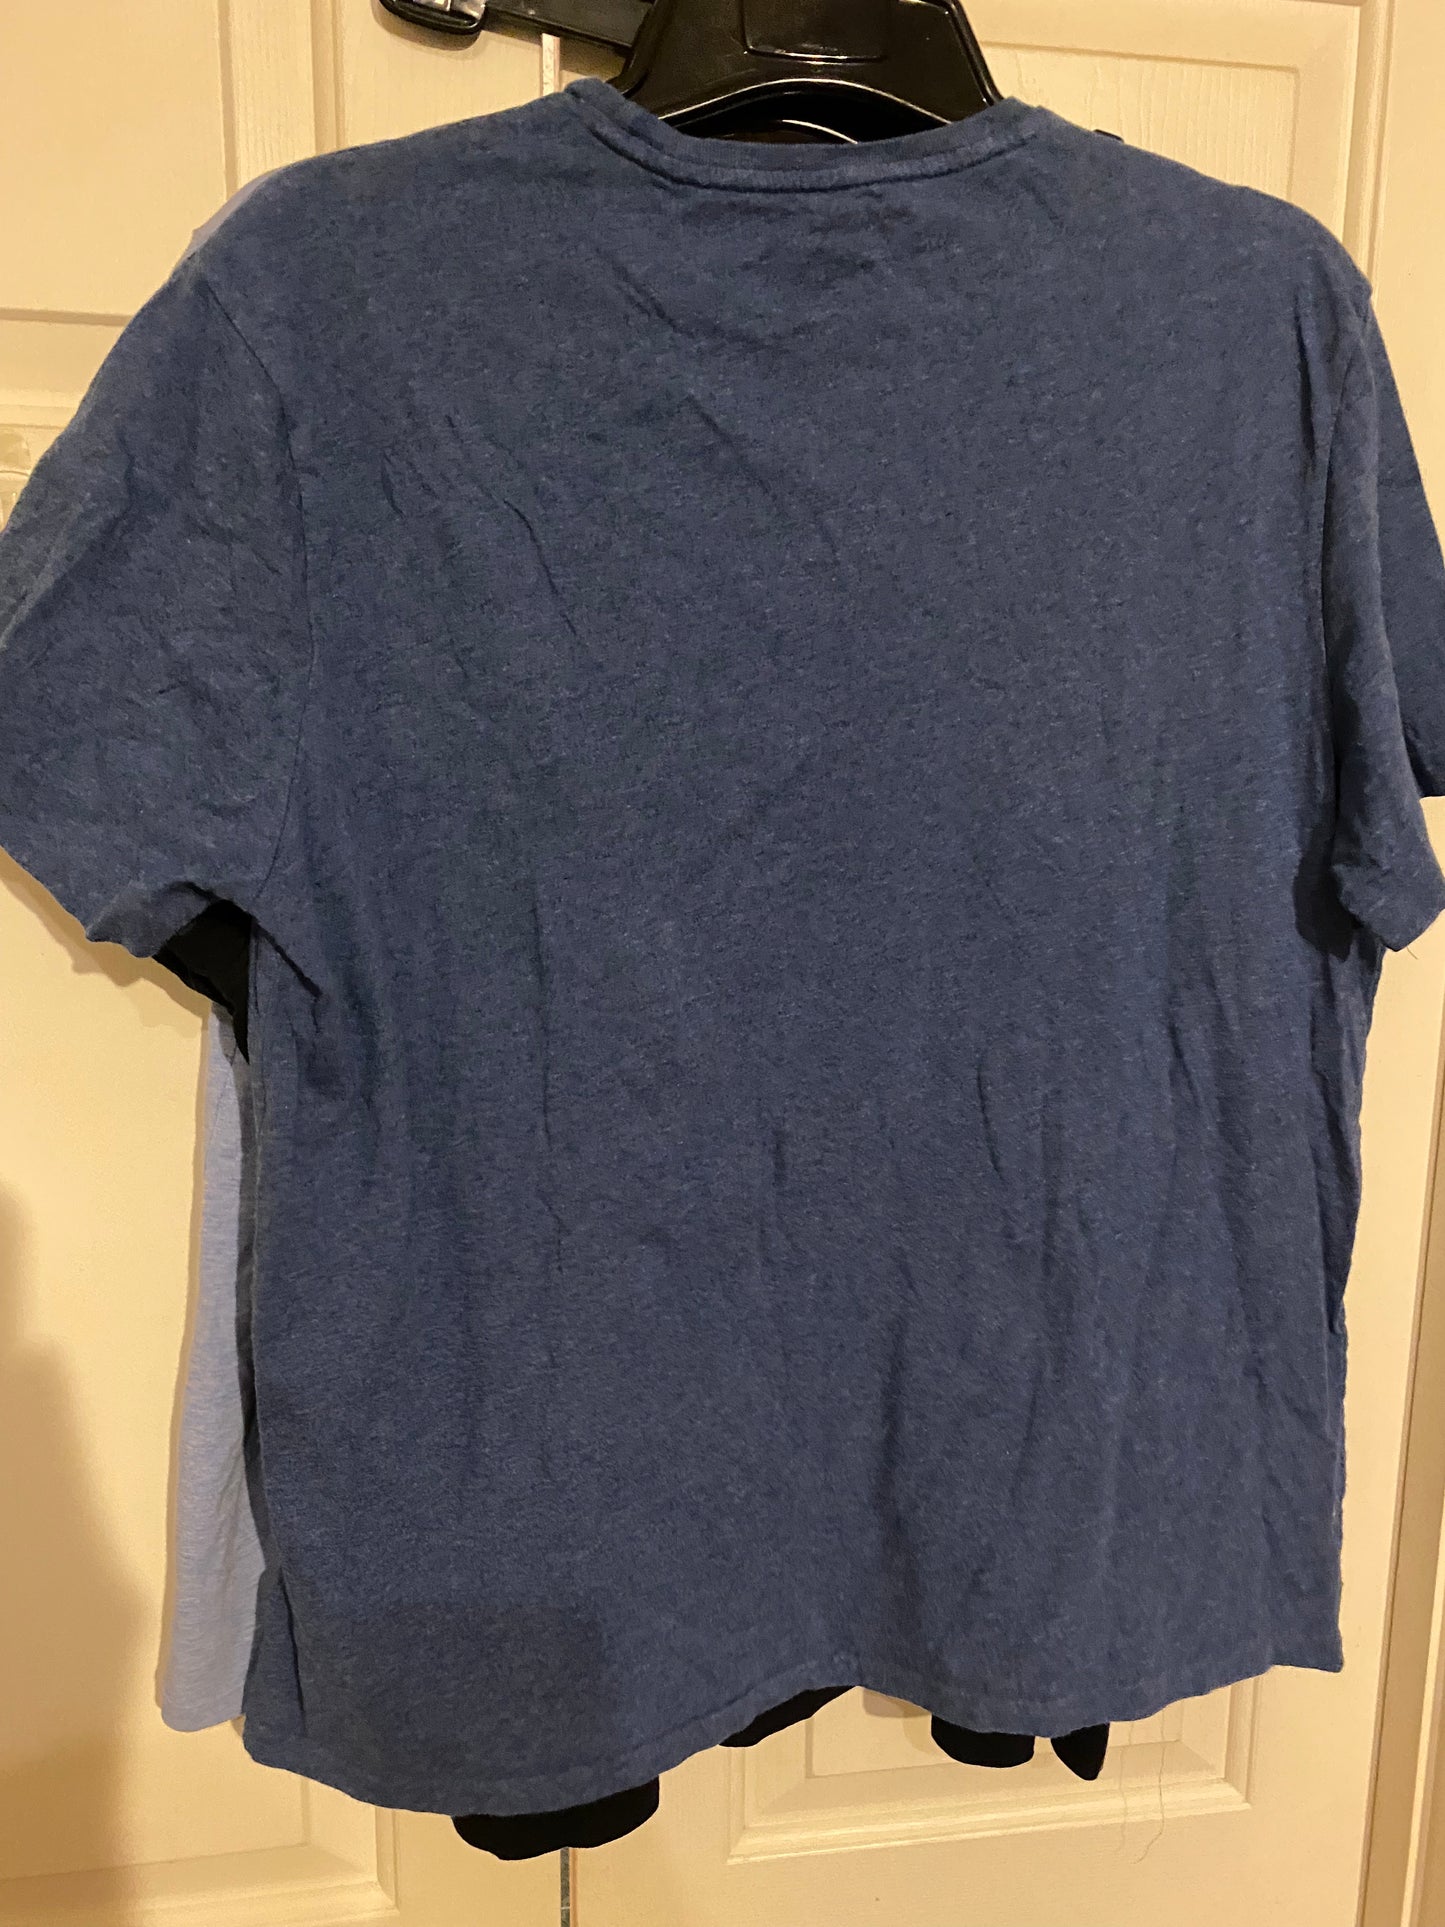 Polo Ralph Lauren Mens T-Shirt Adult Large Light Blue Short Sleeve T-Shirt